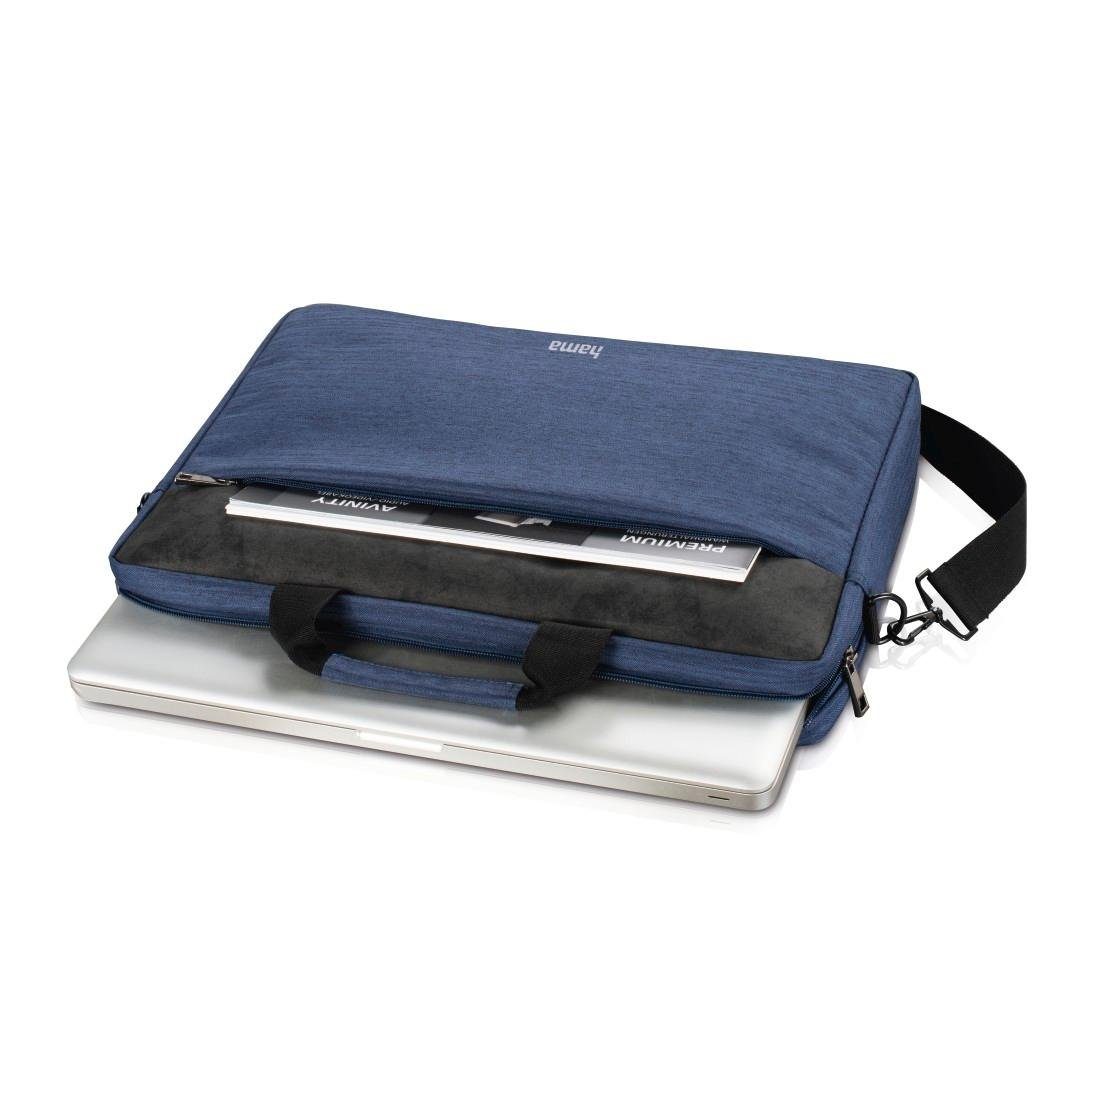 40 Für Displaygröße: dunkelblau 40 bis cm (15,6) "Tayrona", Hama Laptop-Tasche Laptoptasche Notebook-Tasche, (15,6) cm